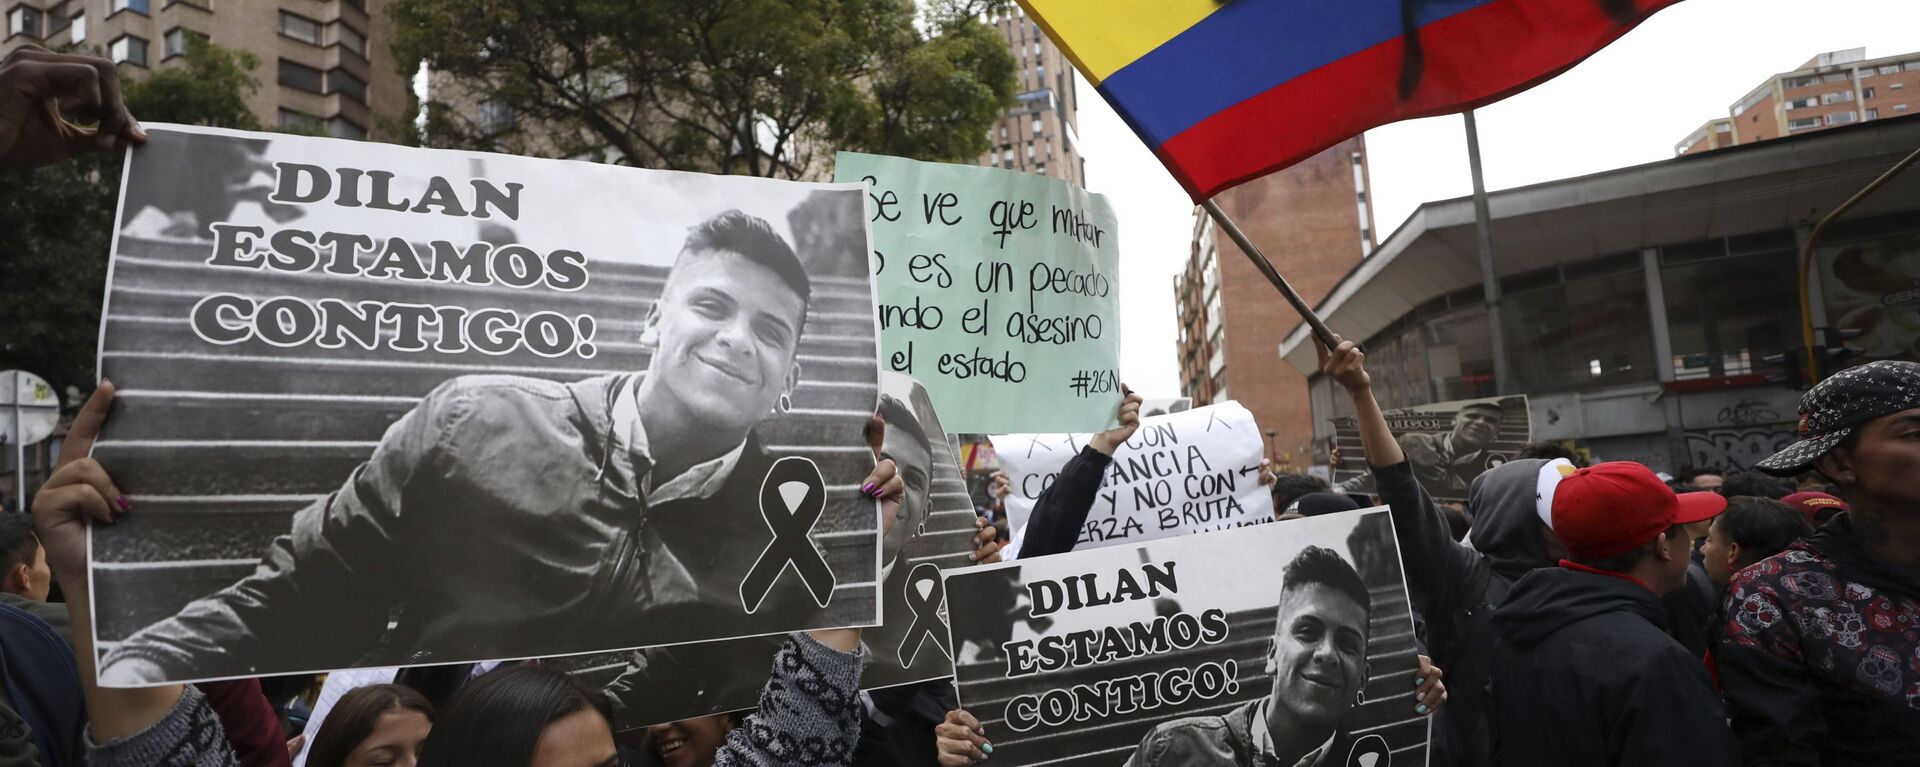 Jóvenes manifestándose por el joven Dilan Cruz en Colombia en 2019 - Sputnik Mundo, 1920, 18.06.2021